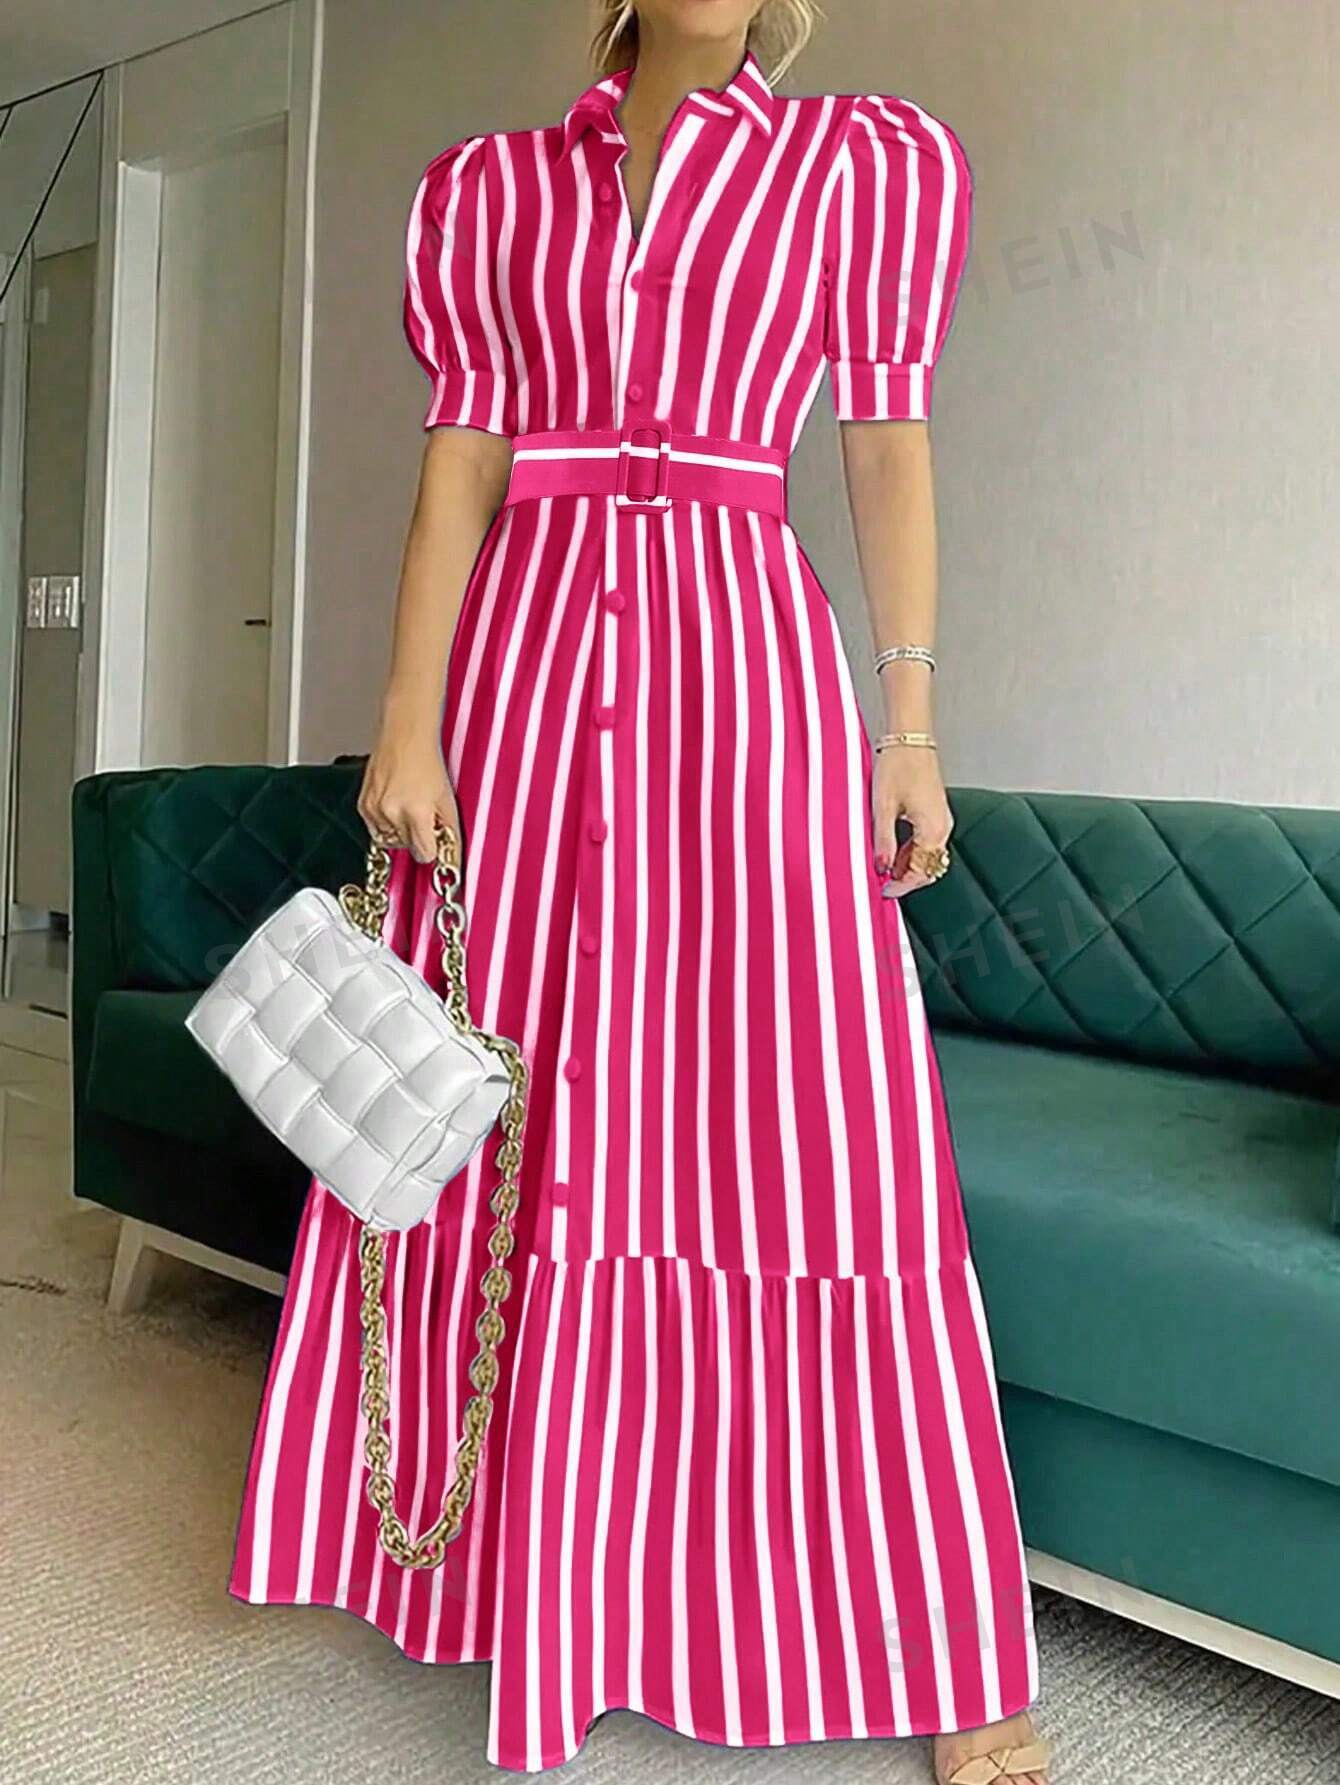 trussardi платье рубашка в полоску 48 SHEIN Privé Платье-рубашка в полоску с объемными рукавами и поясом, ярко-розовый